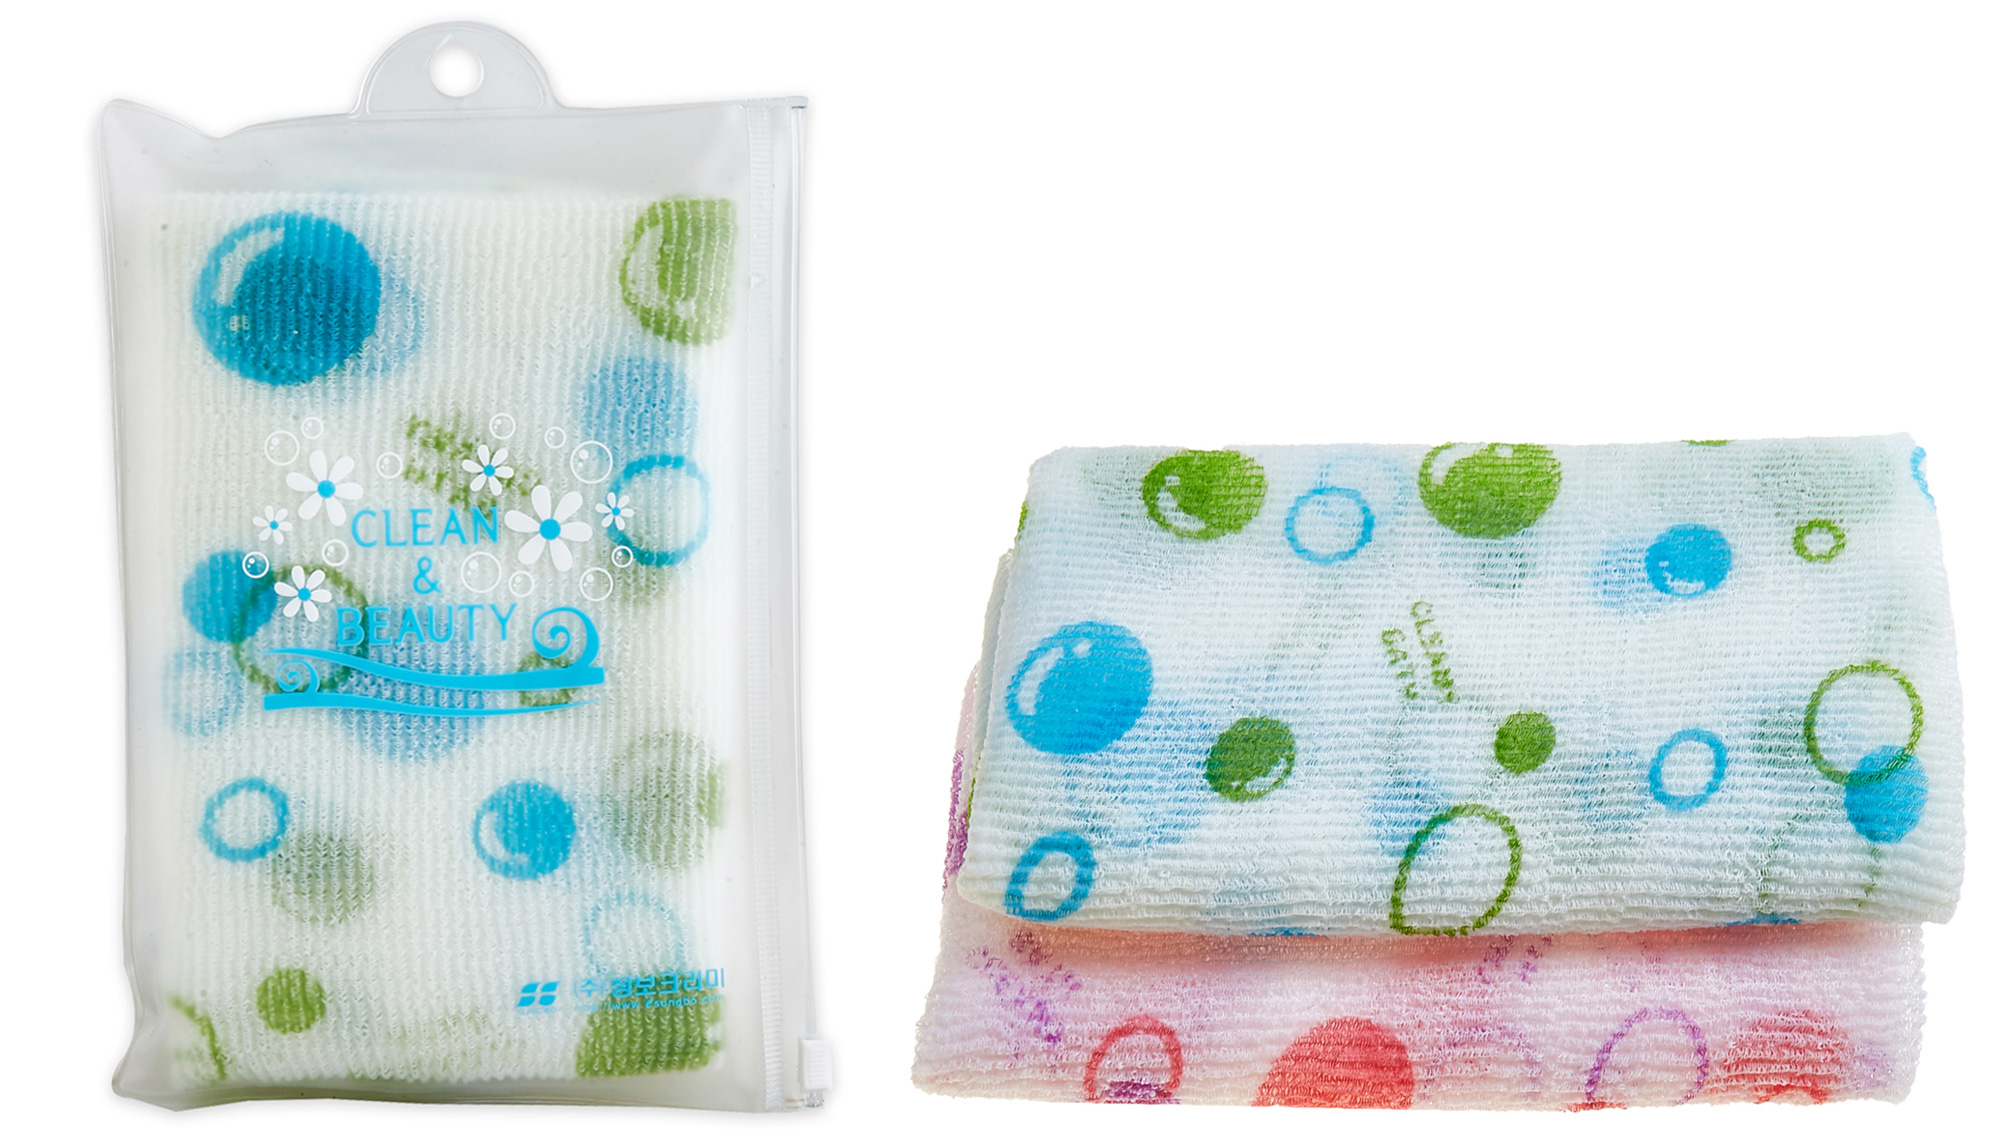 картинка Sungbo Cleamy Мочалка для душа мягкой жесткости Bubble Shower Towel 28см*100см 1шт